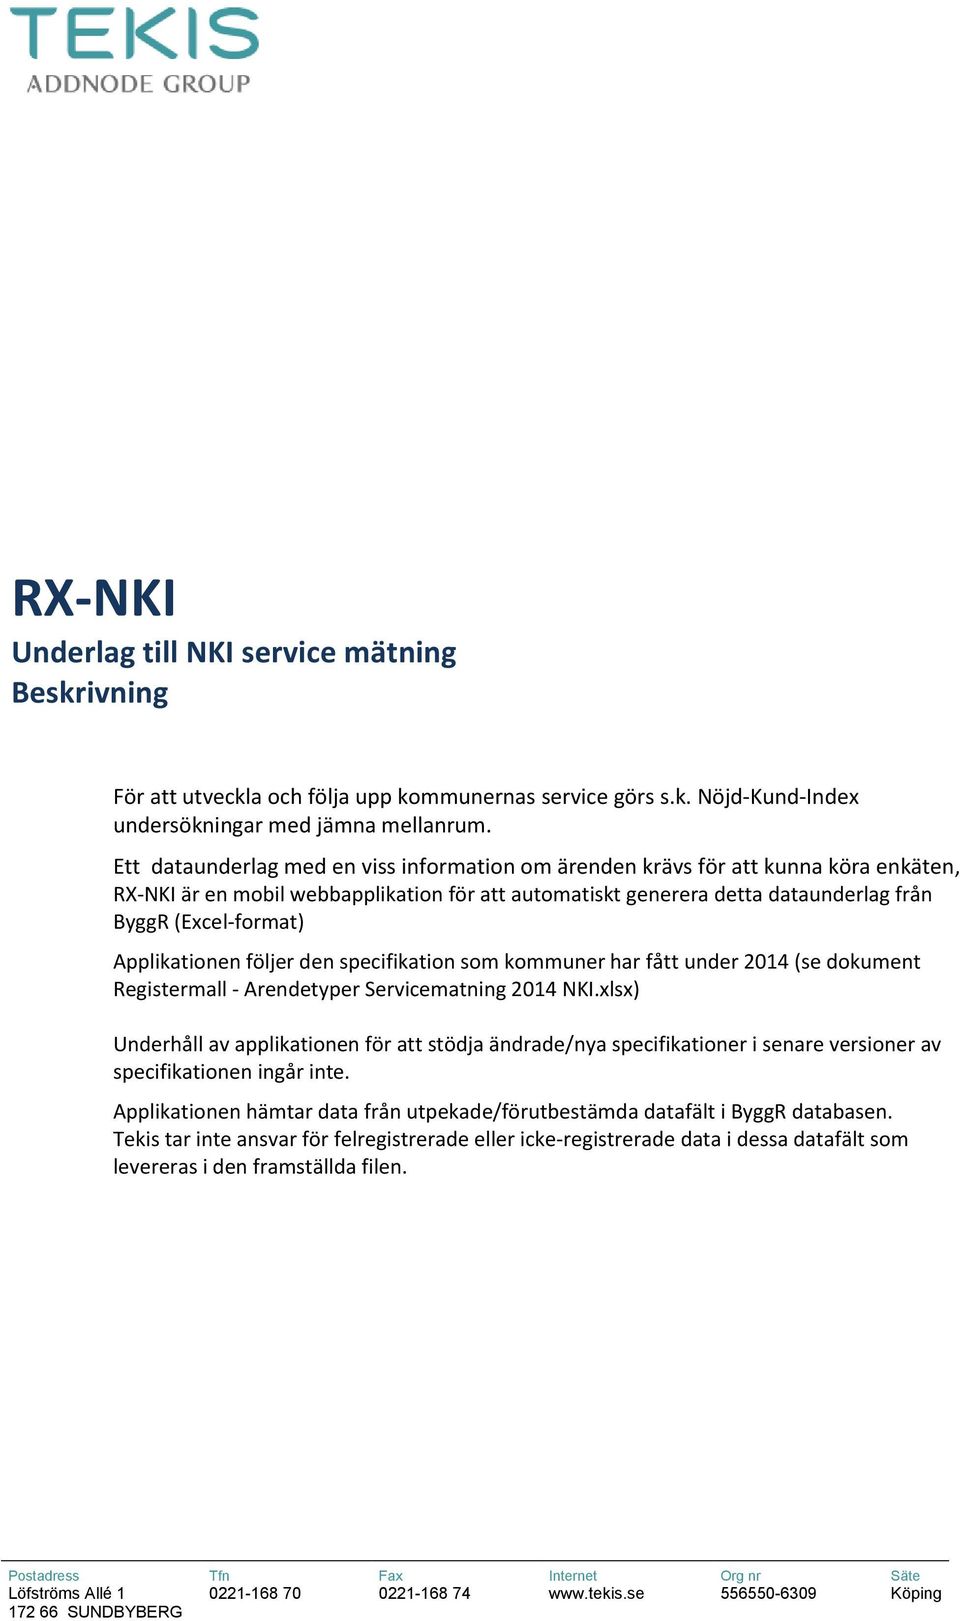 Applikationen följer den specifikation som kommuner har fått under 2014 (se dokument Registermall - Arendetyper Servicematning 2014 NKI.